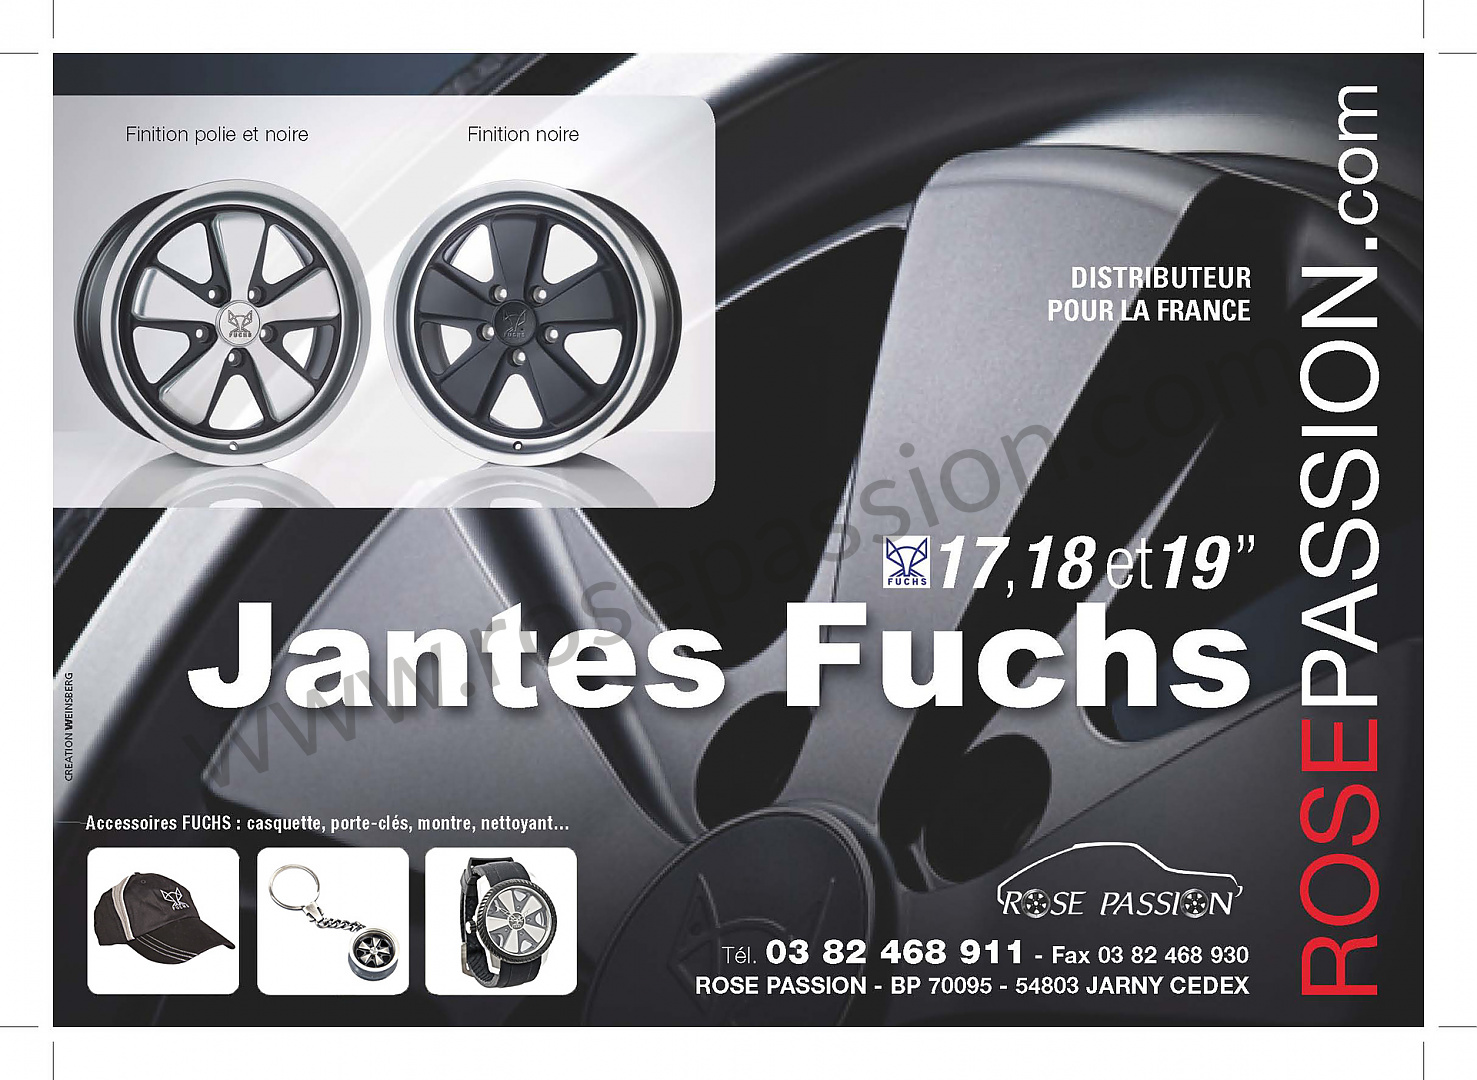 Porsche Jantes et accessoires - Porsche France